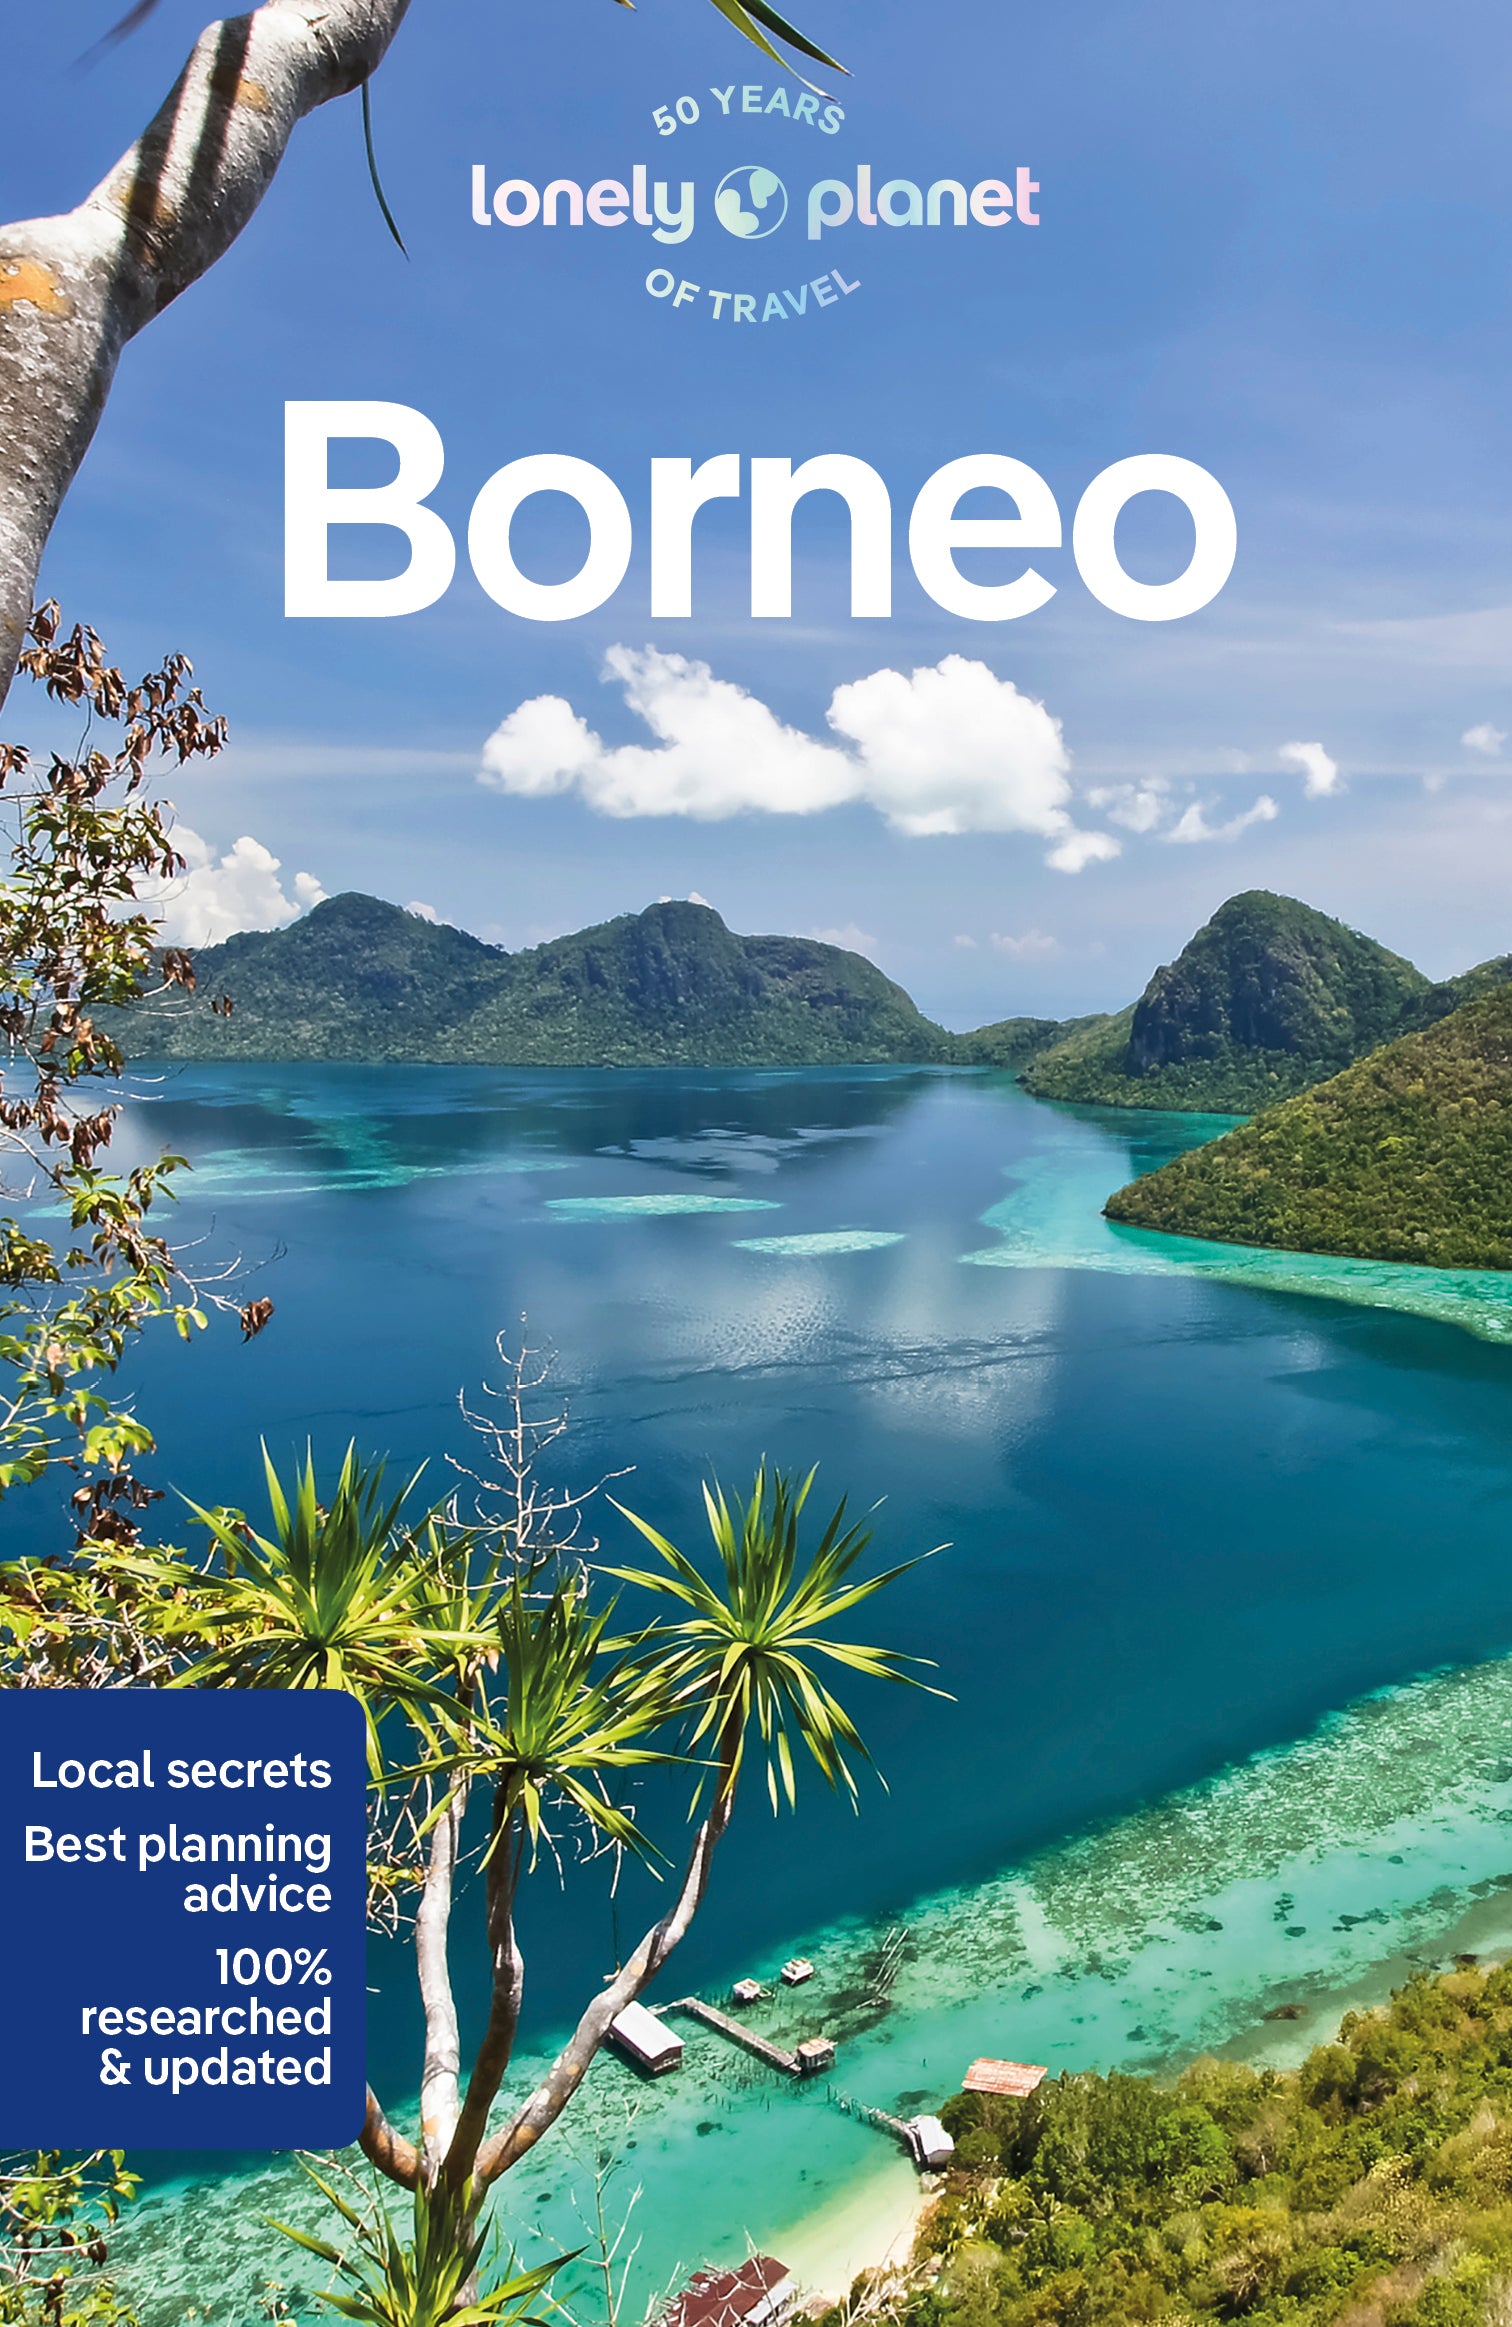 Borneo　Travel　Book　and　Ebook